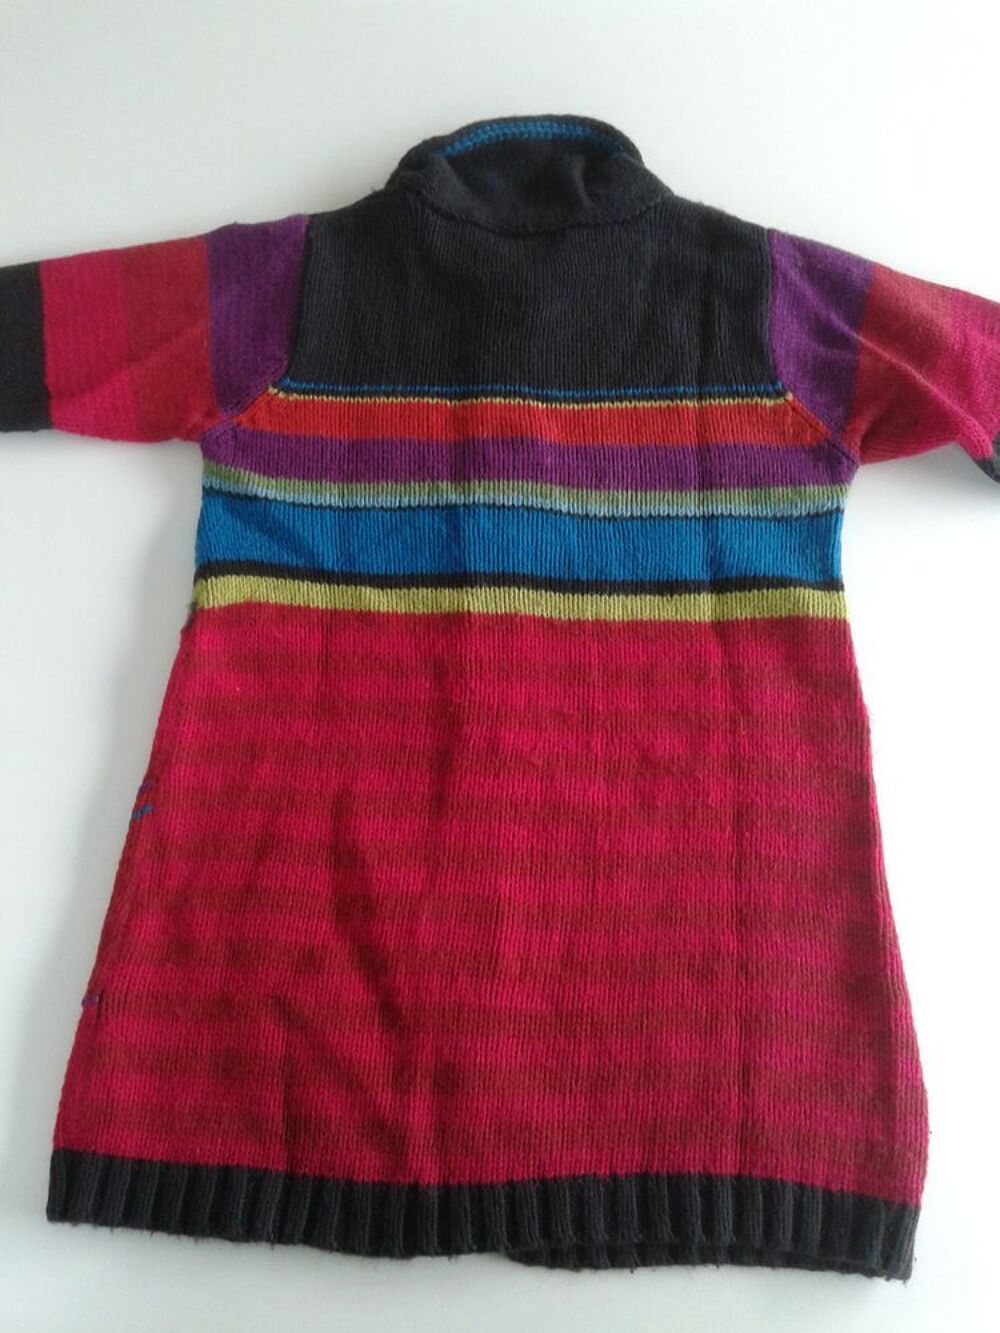 Beau gilet long tricot Catimini 8 ans Vtements enfants